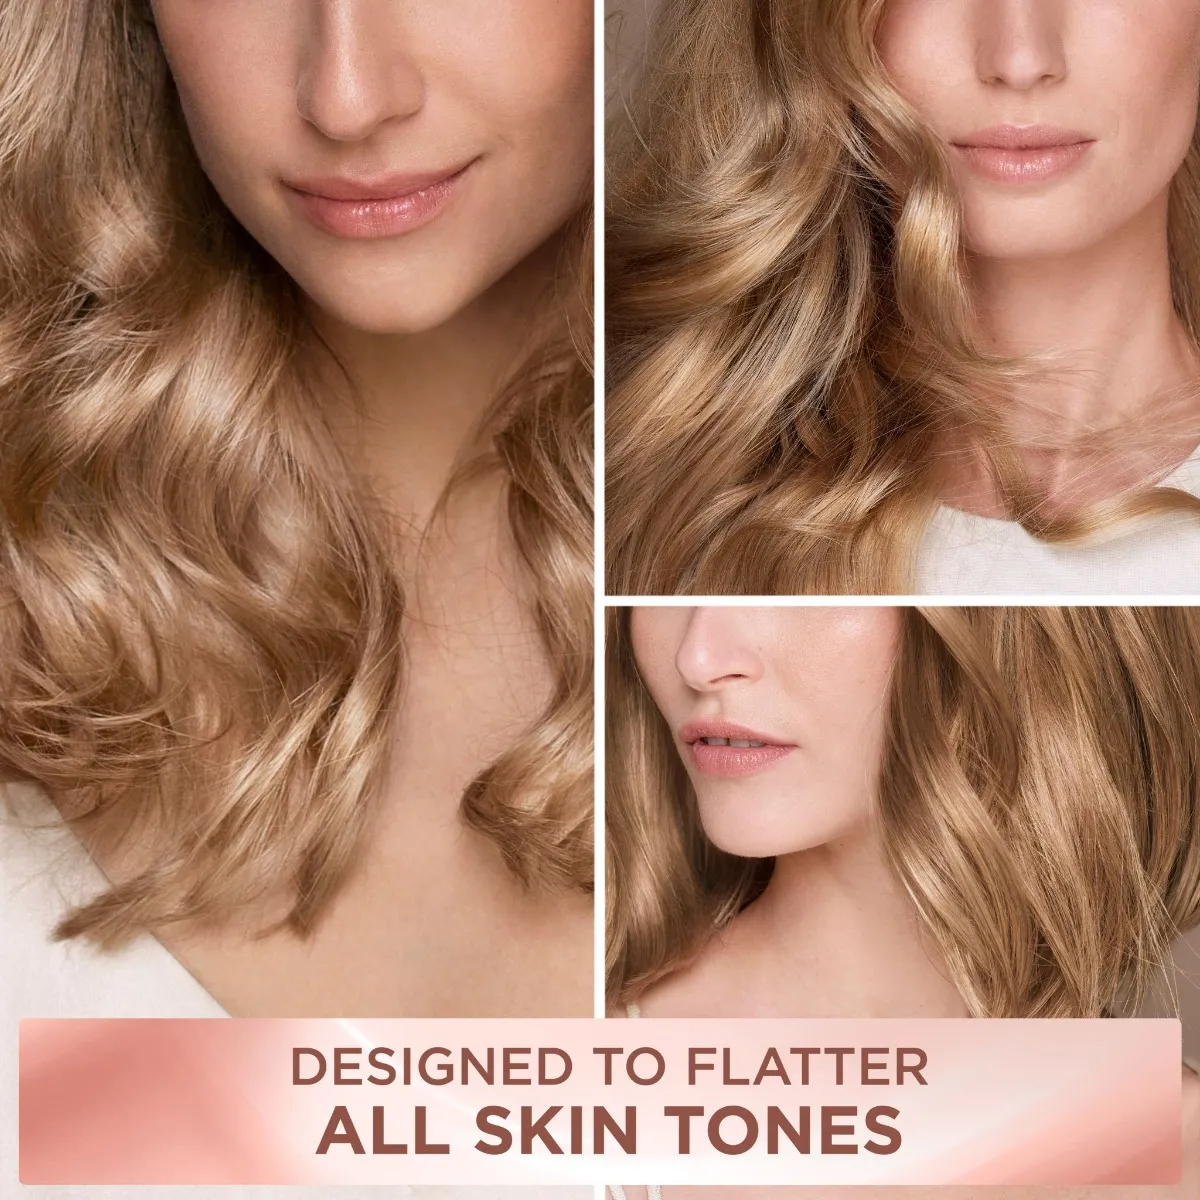 Loréal Paris Excellence Creme Universal Nudes odstín 8U světlá blond barva na vlasy